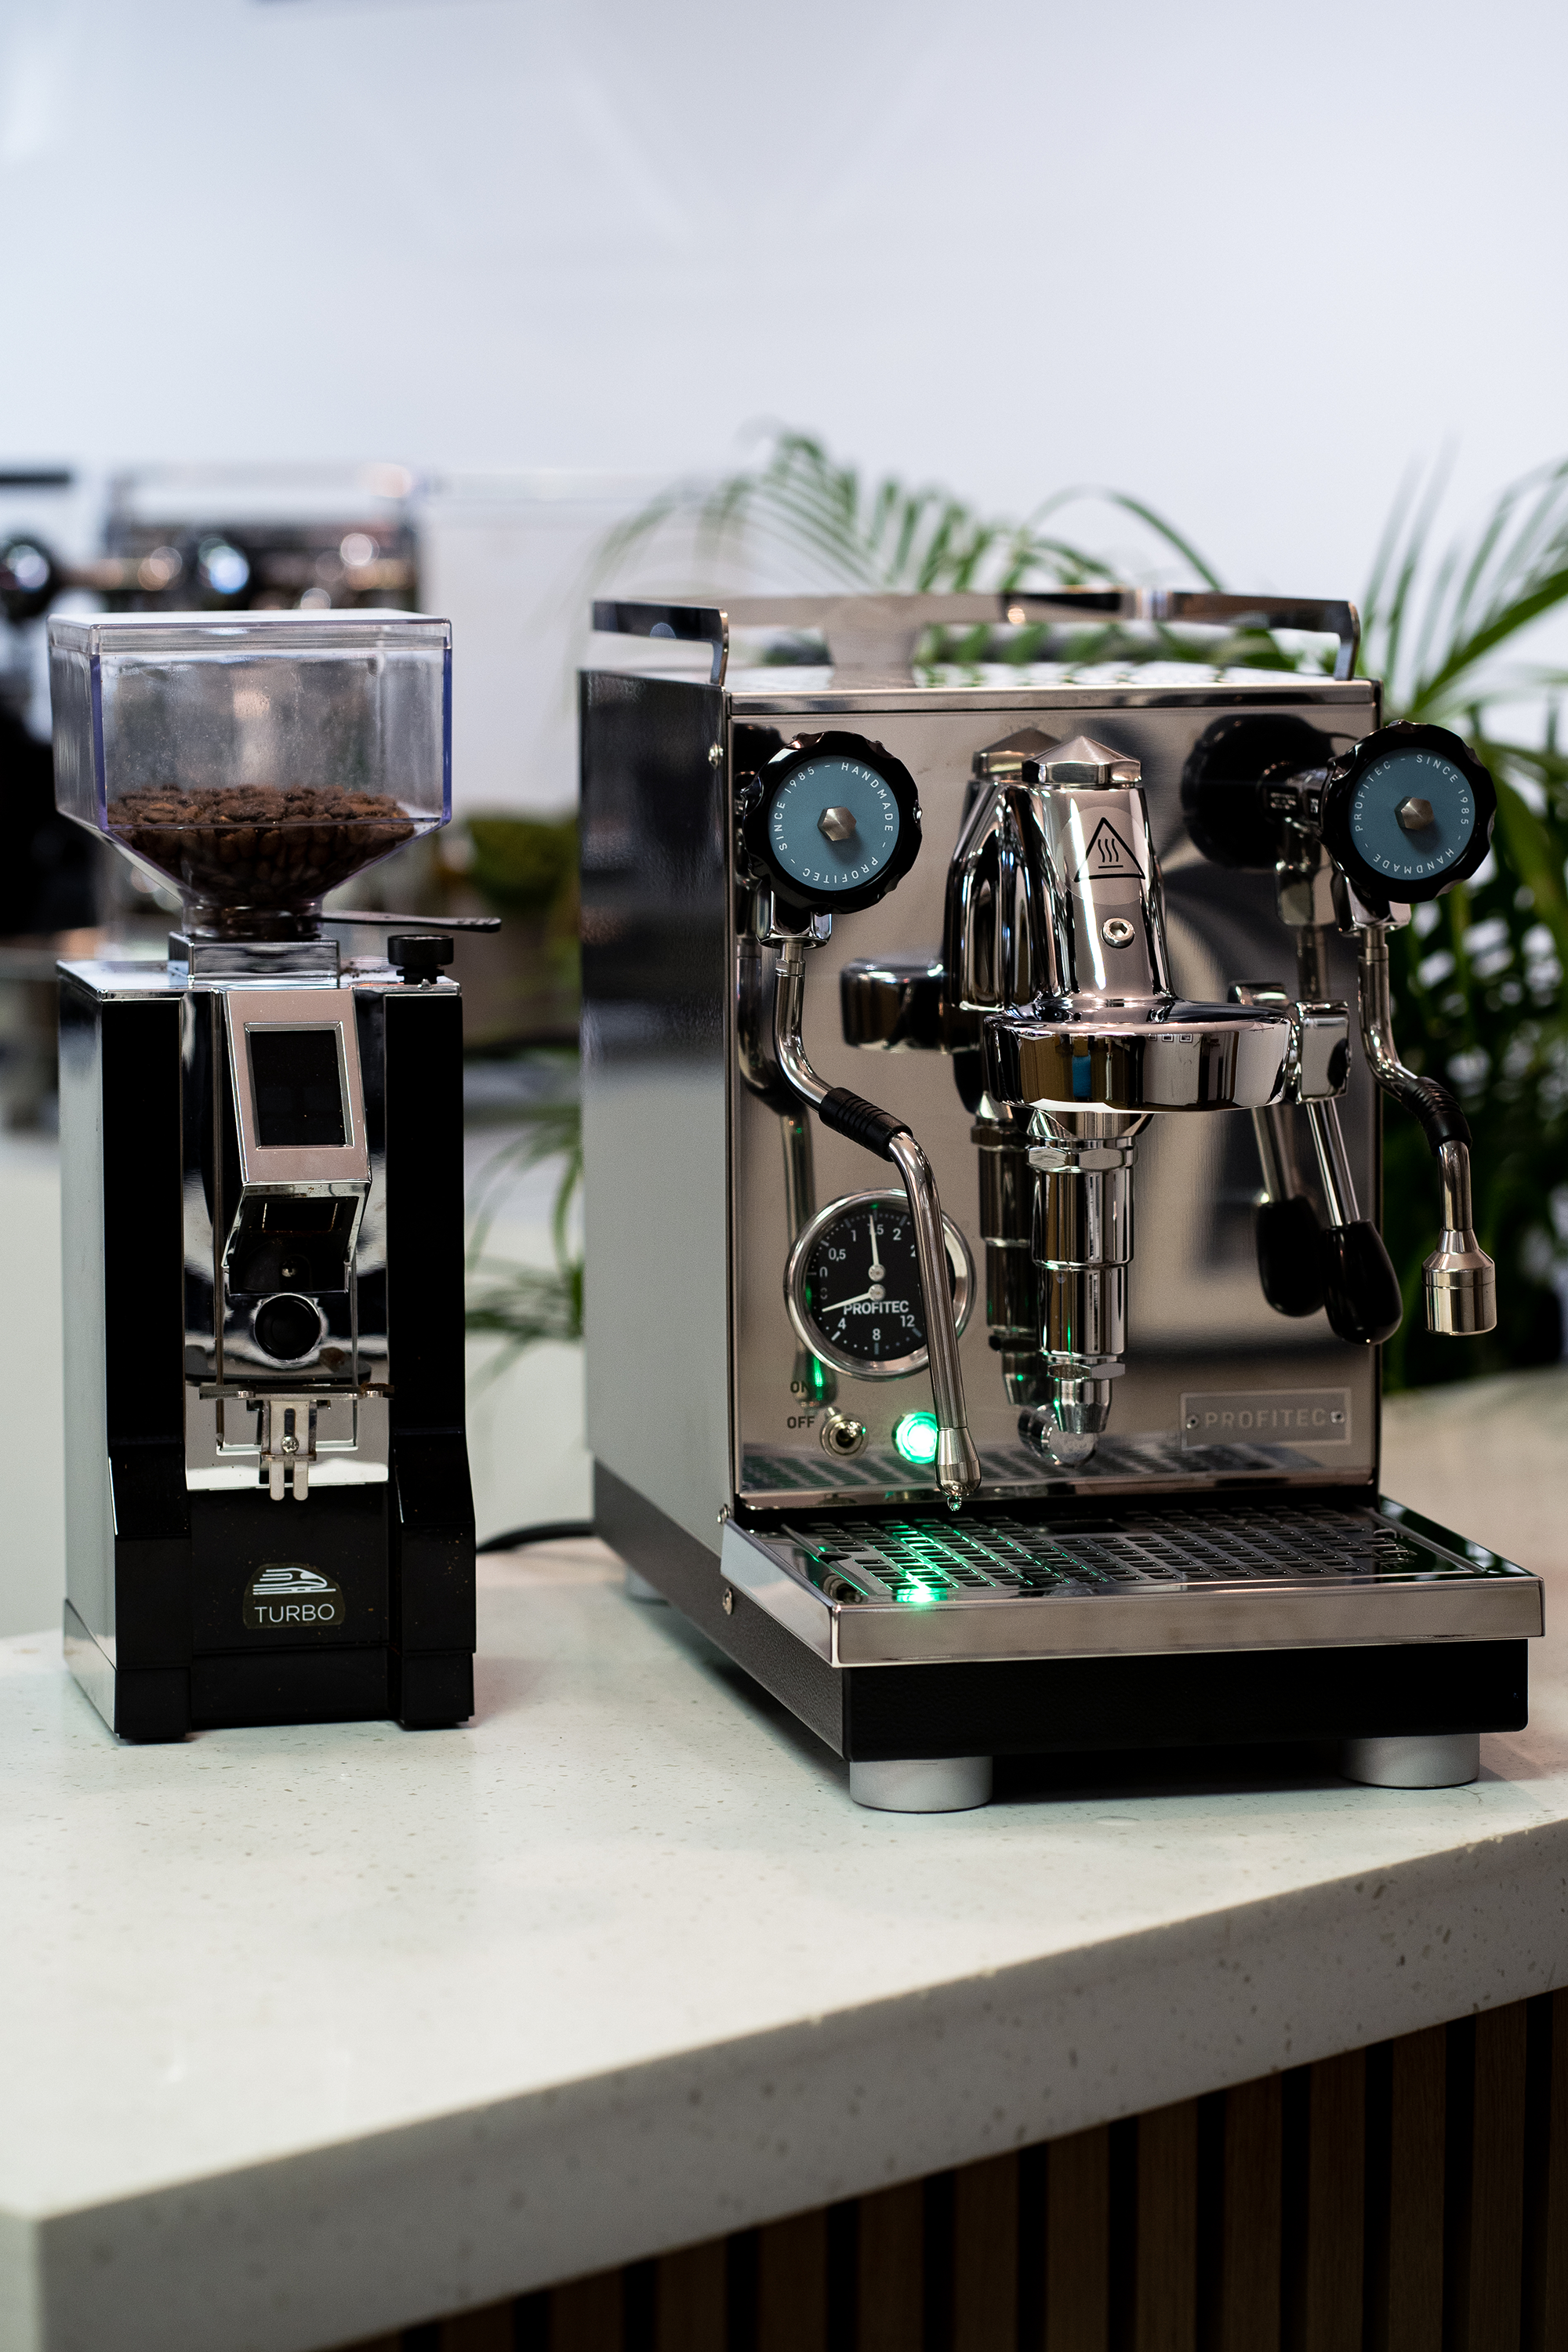 What Do Espresso Grinders Do? Tips for Adjusting Your Grinder